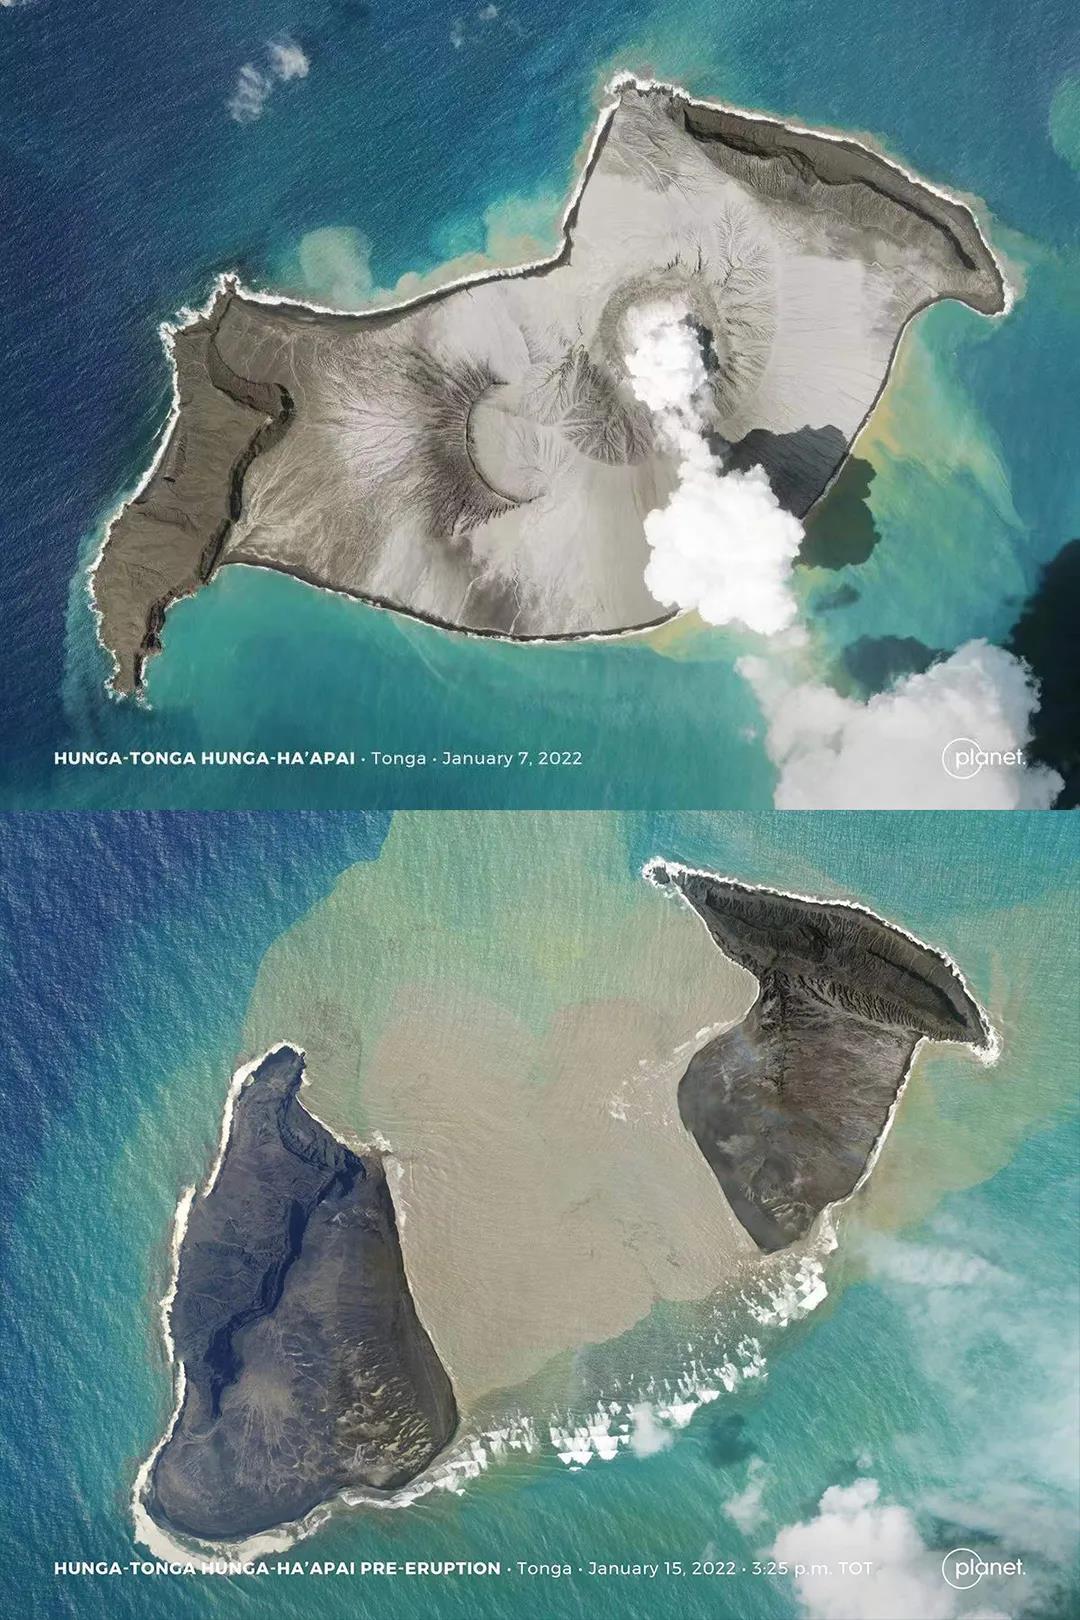 汤加卫星地图图片